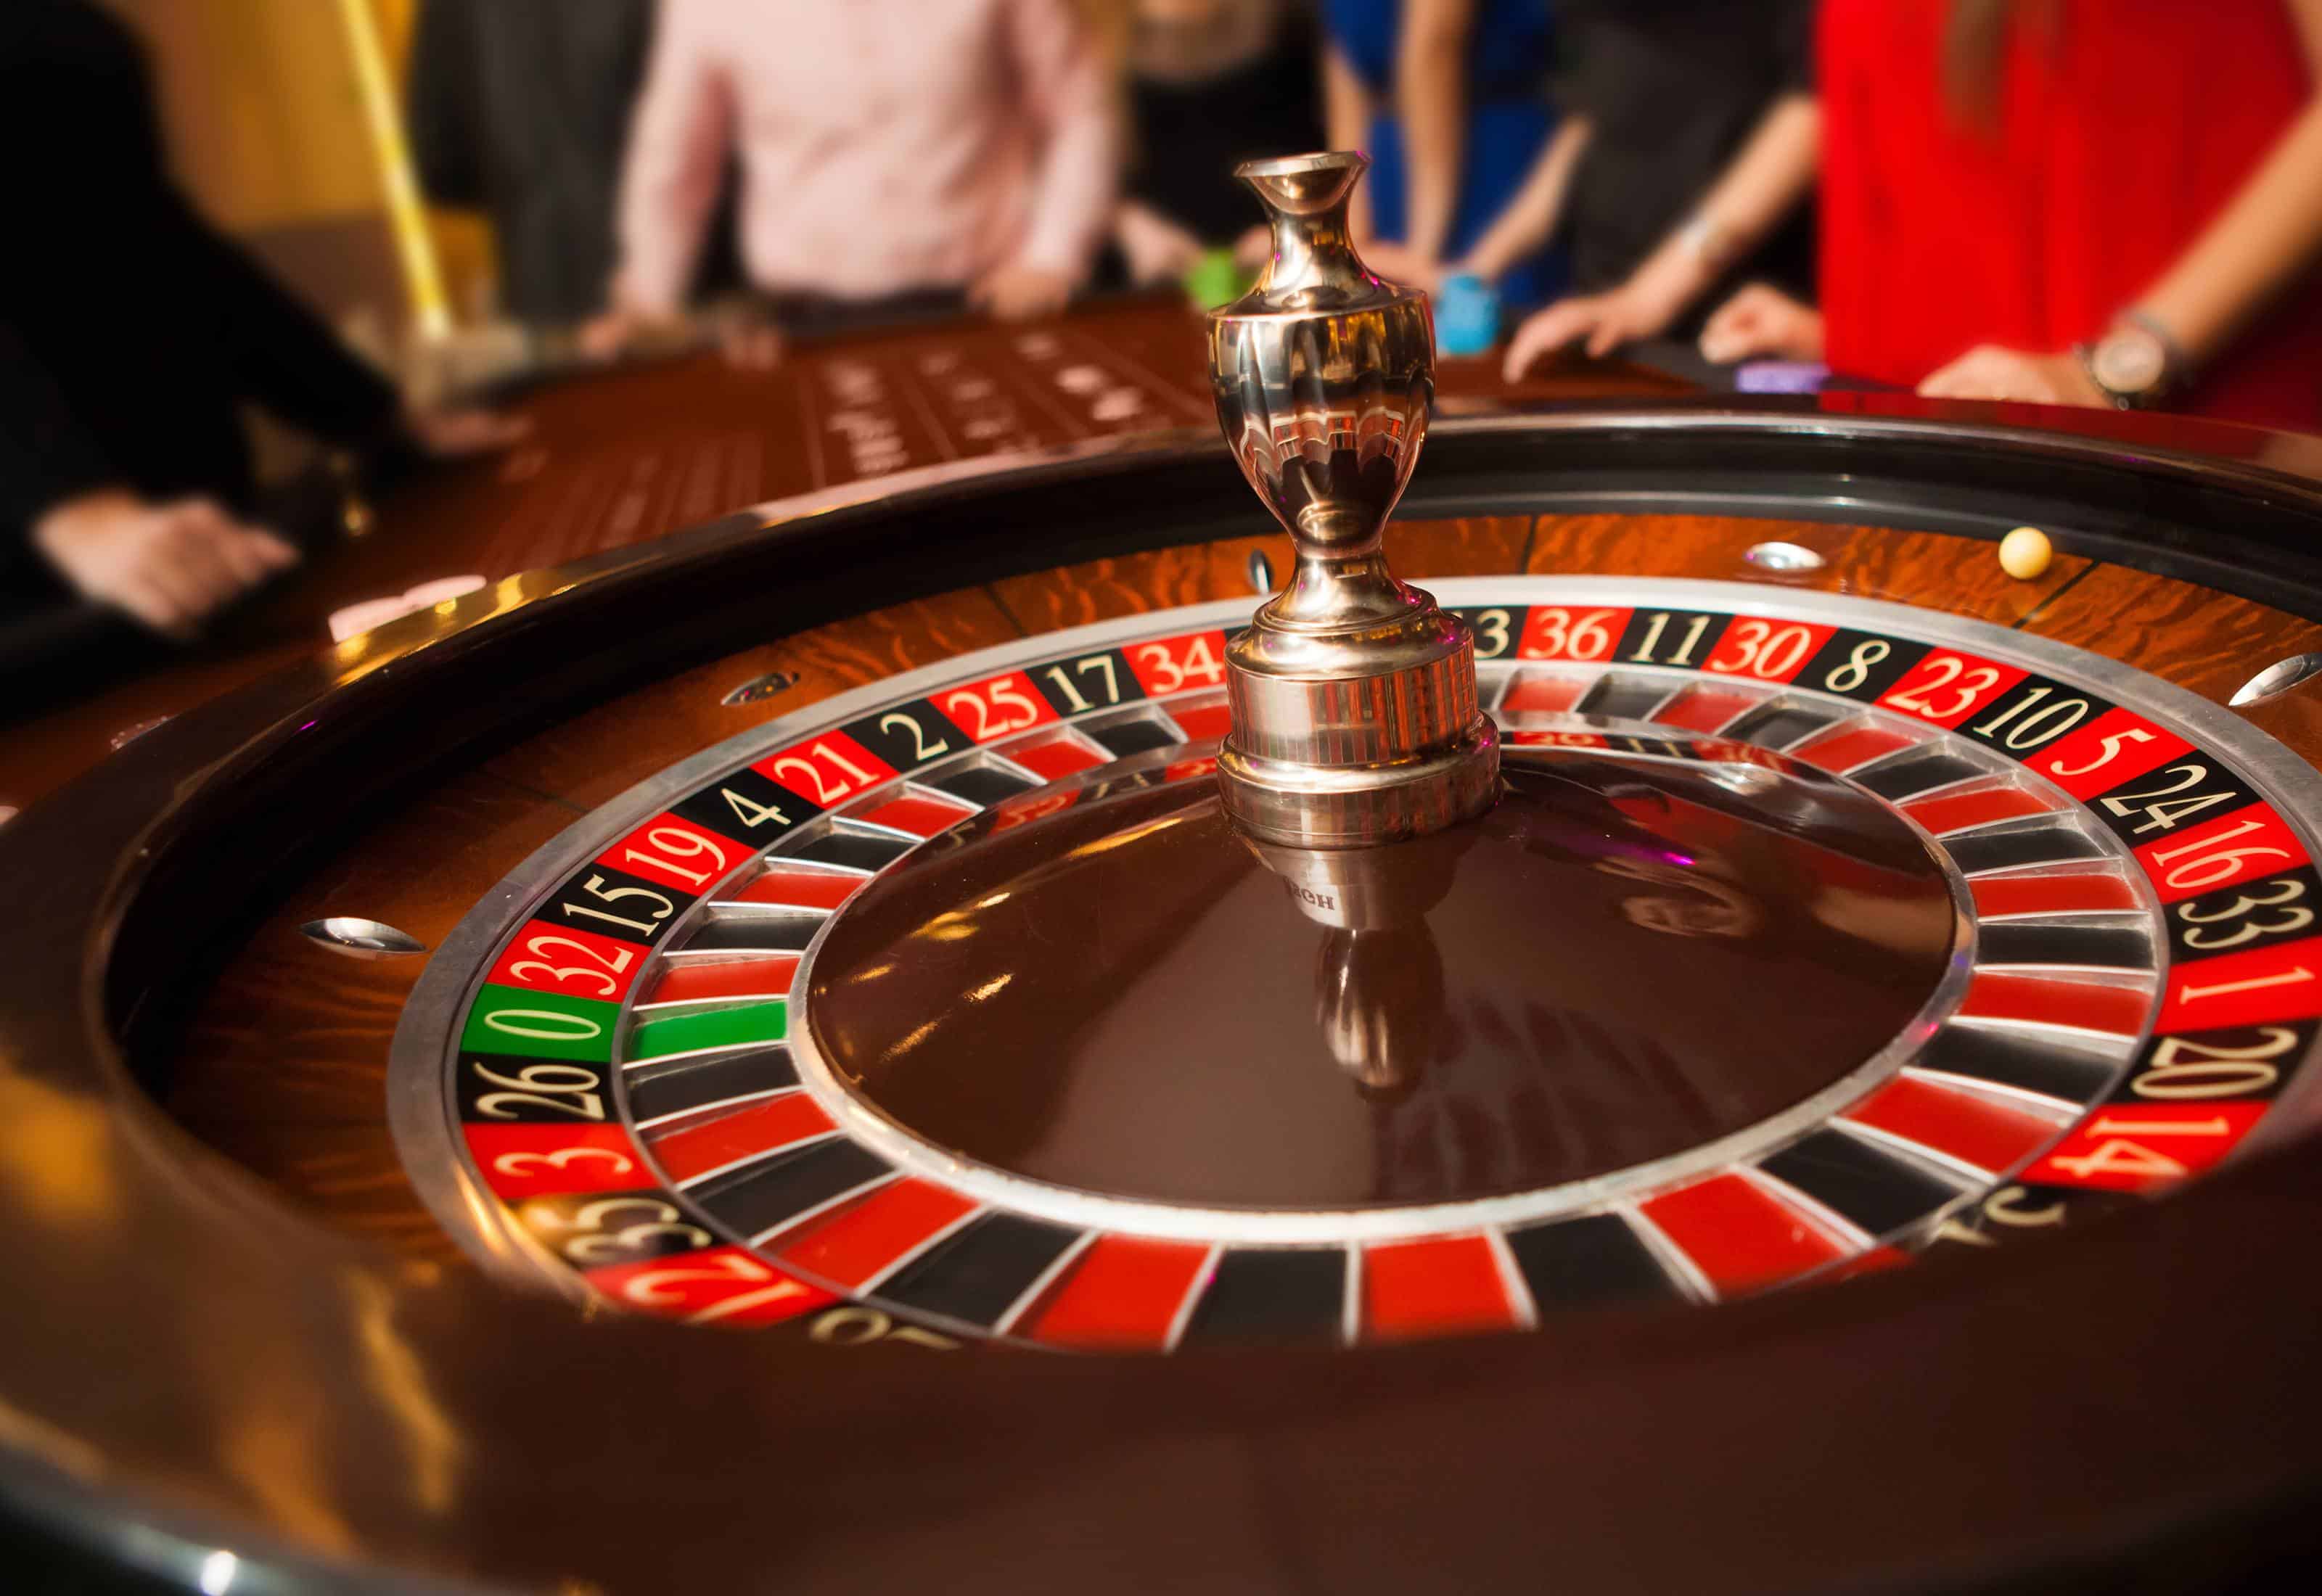 Casino: VOLUNTEERS NEEDED